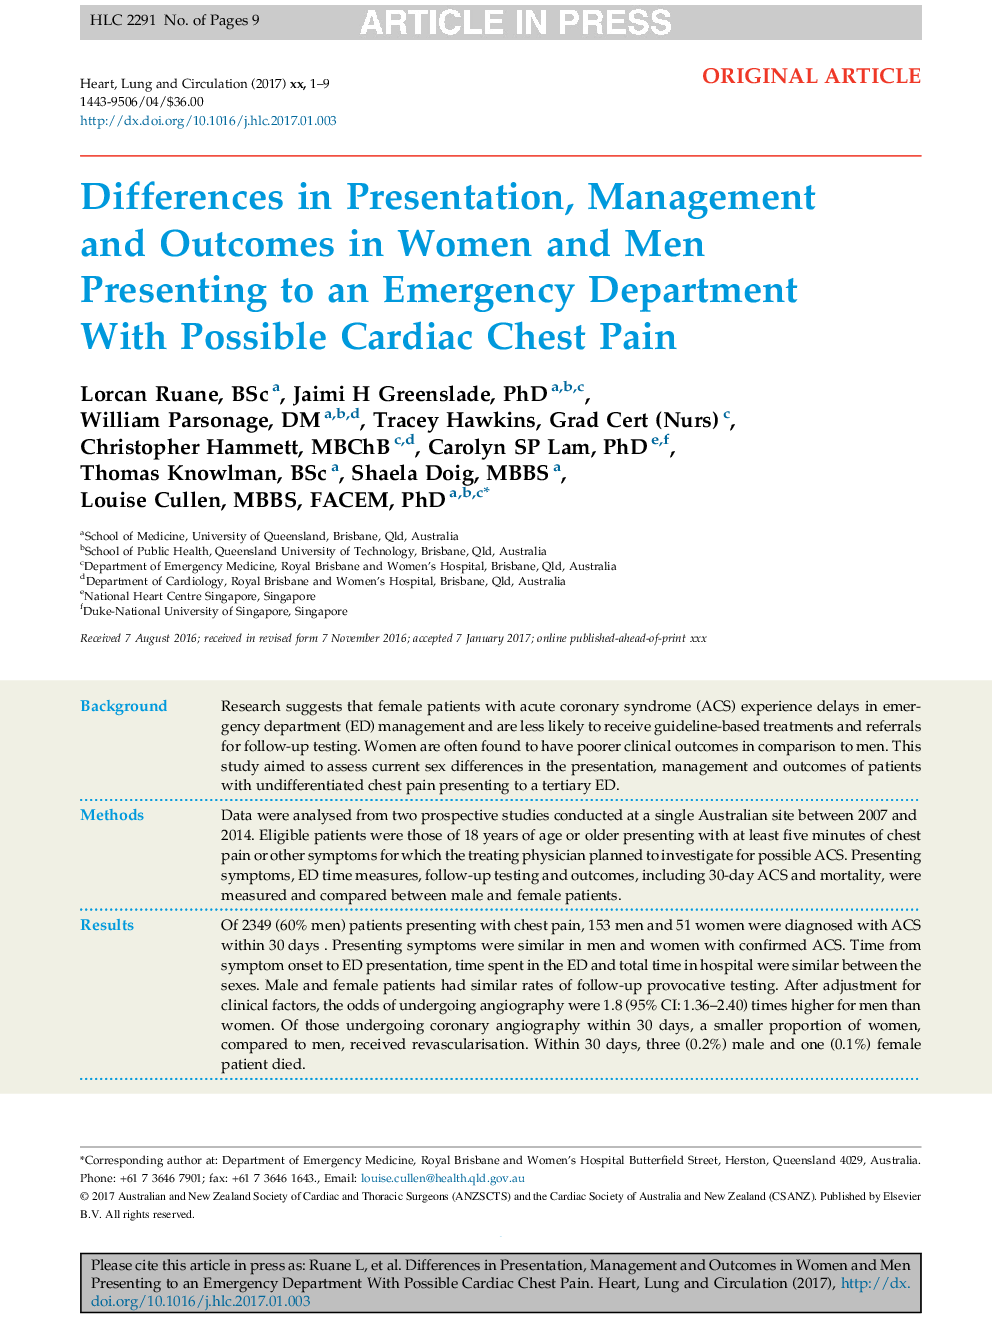 تفاوت در ارائه، مدیریت و نتایج زنان و مردان در حال ارائه به بخش اورژانس با امکان درد قفسه سینه قلبی 